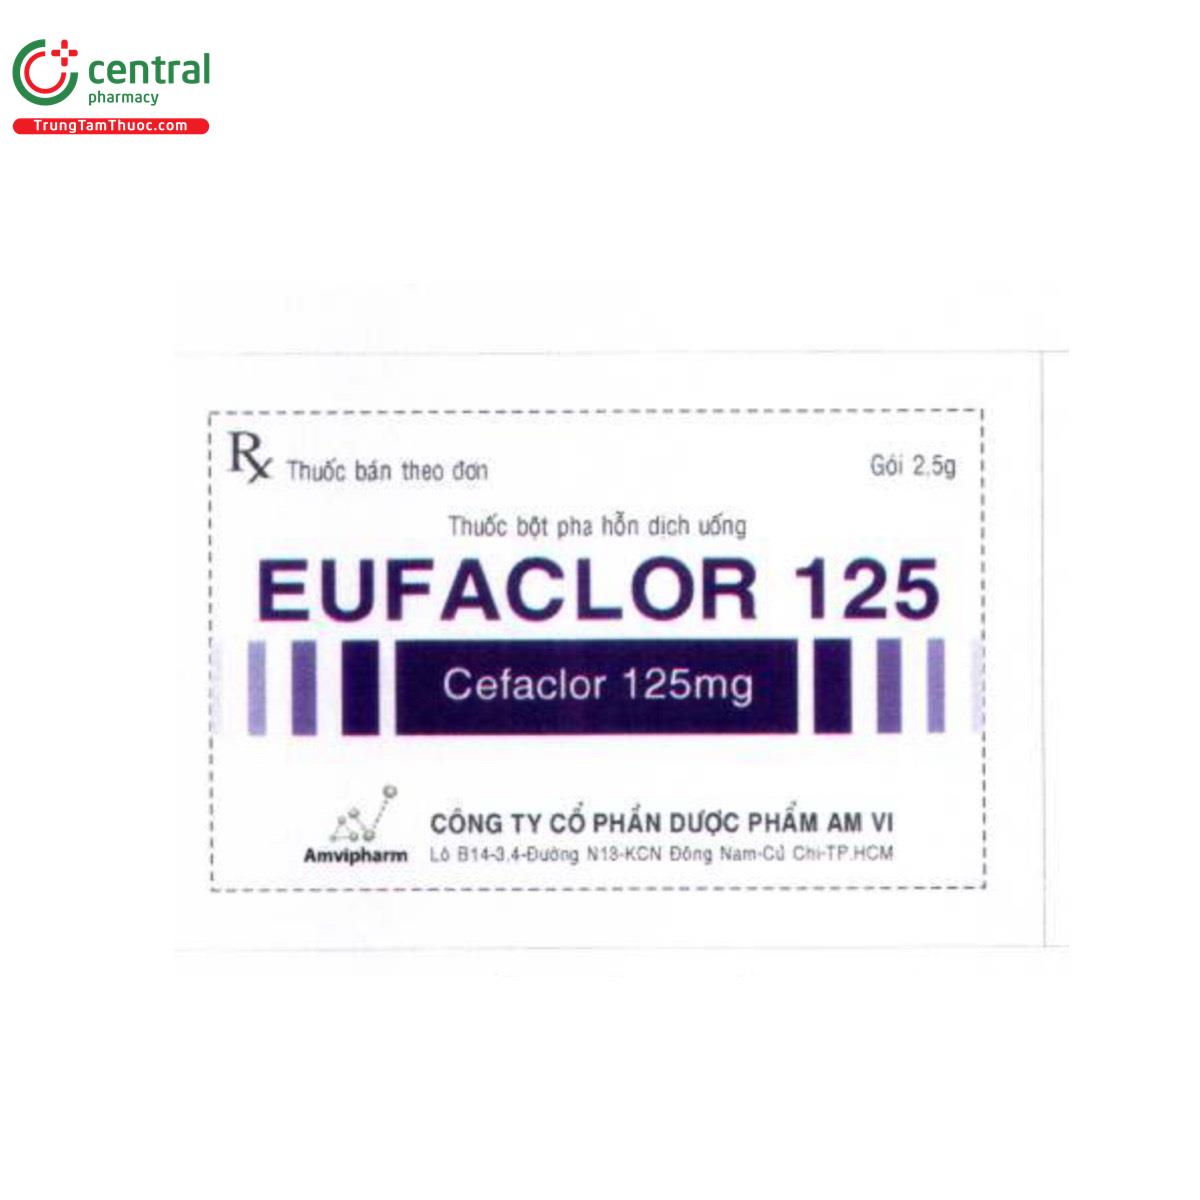 eufaclor 125 5 S7346